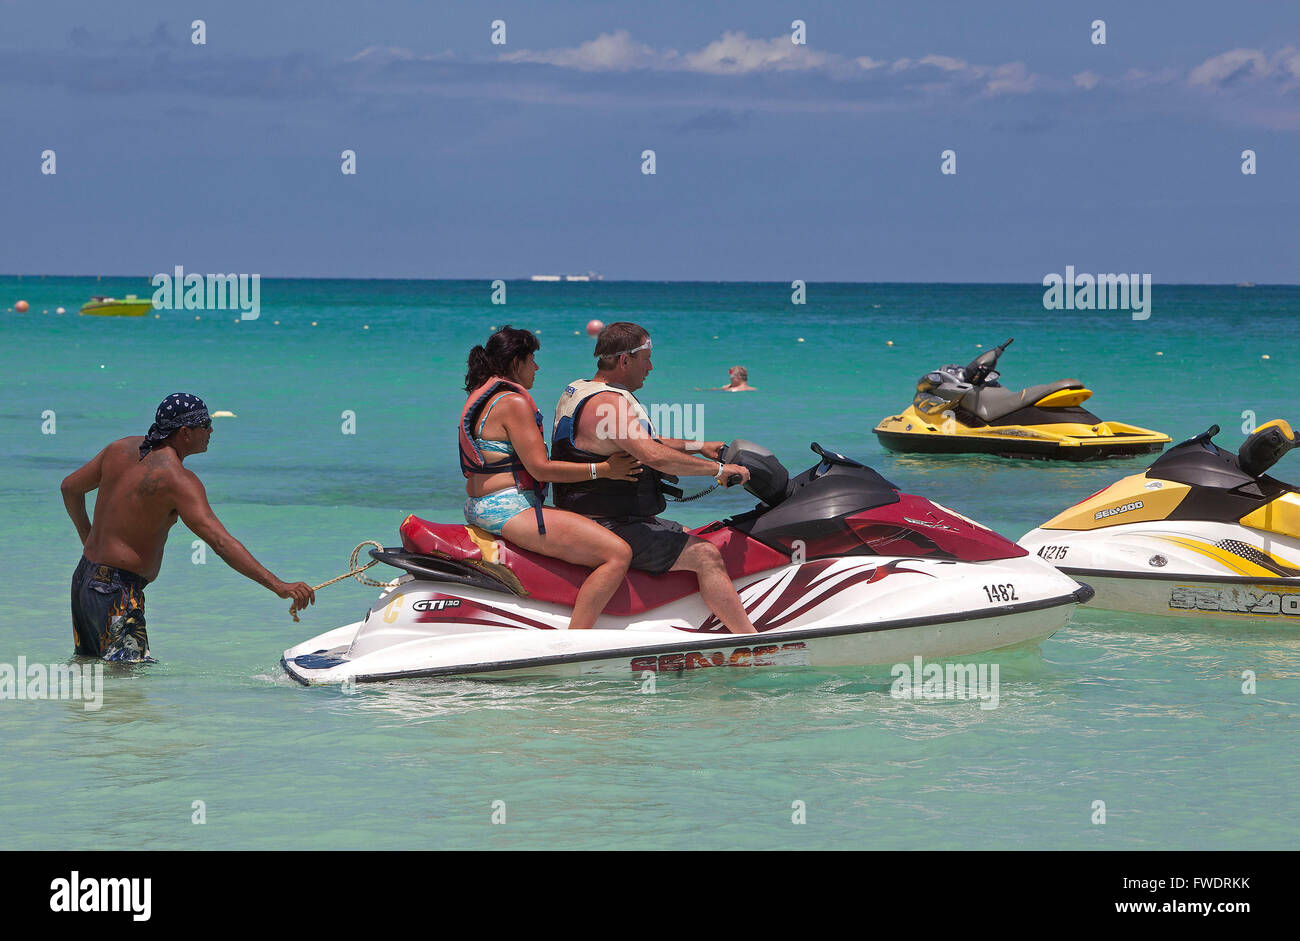 Îles ABC (Aruba, Bonaire et Curaçao) : waterscooters à Oranjestad Aruba, Banque D'Images